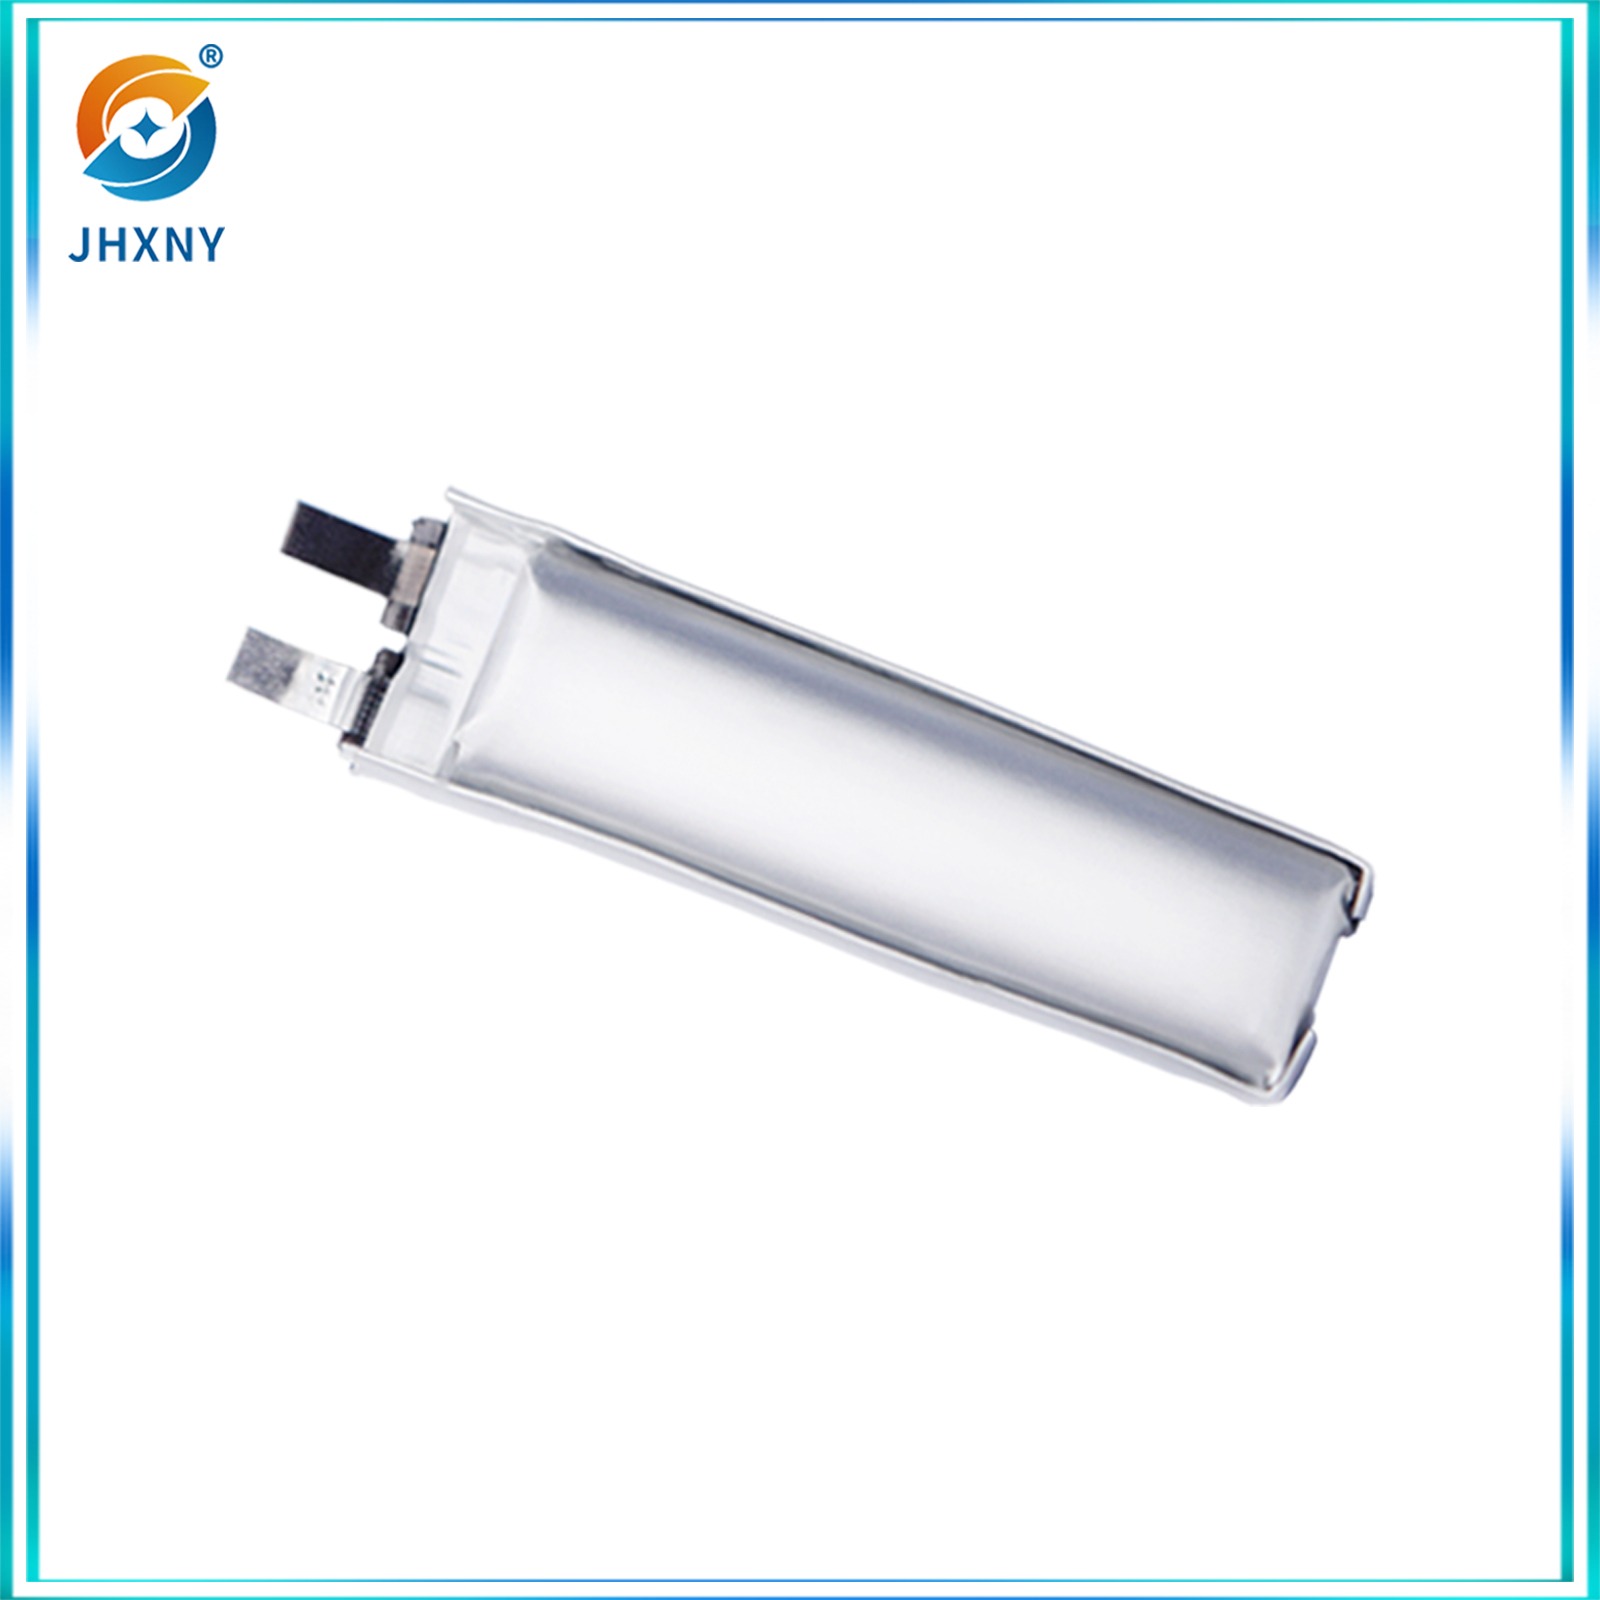 مدفع رشاش كهربائي لفرشاة الأسنان لضخة أيروسول إلكترونية ذات أجنحة ثابتة مخروطية من طراز JH9014447 V41010MH.